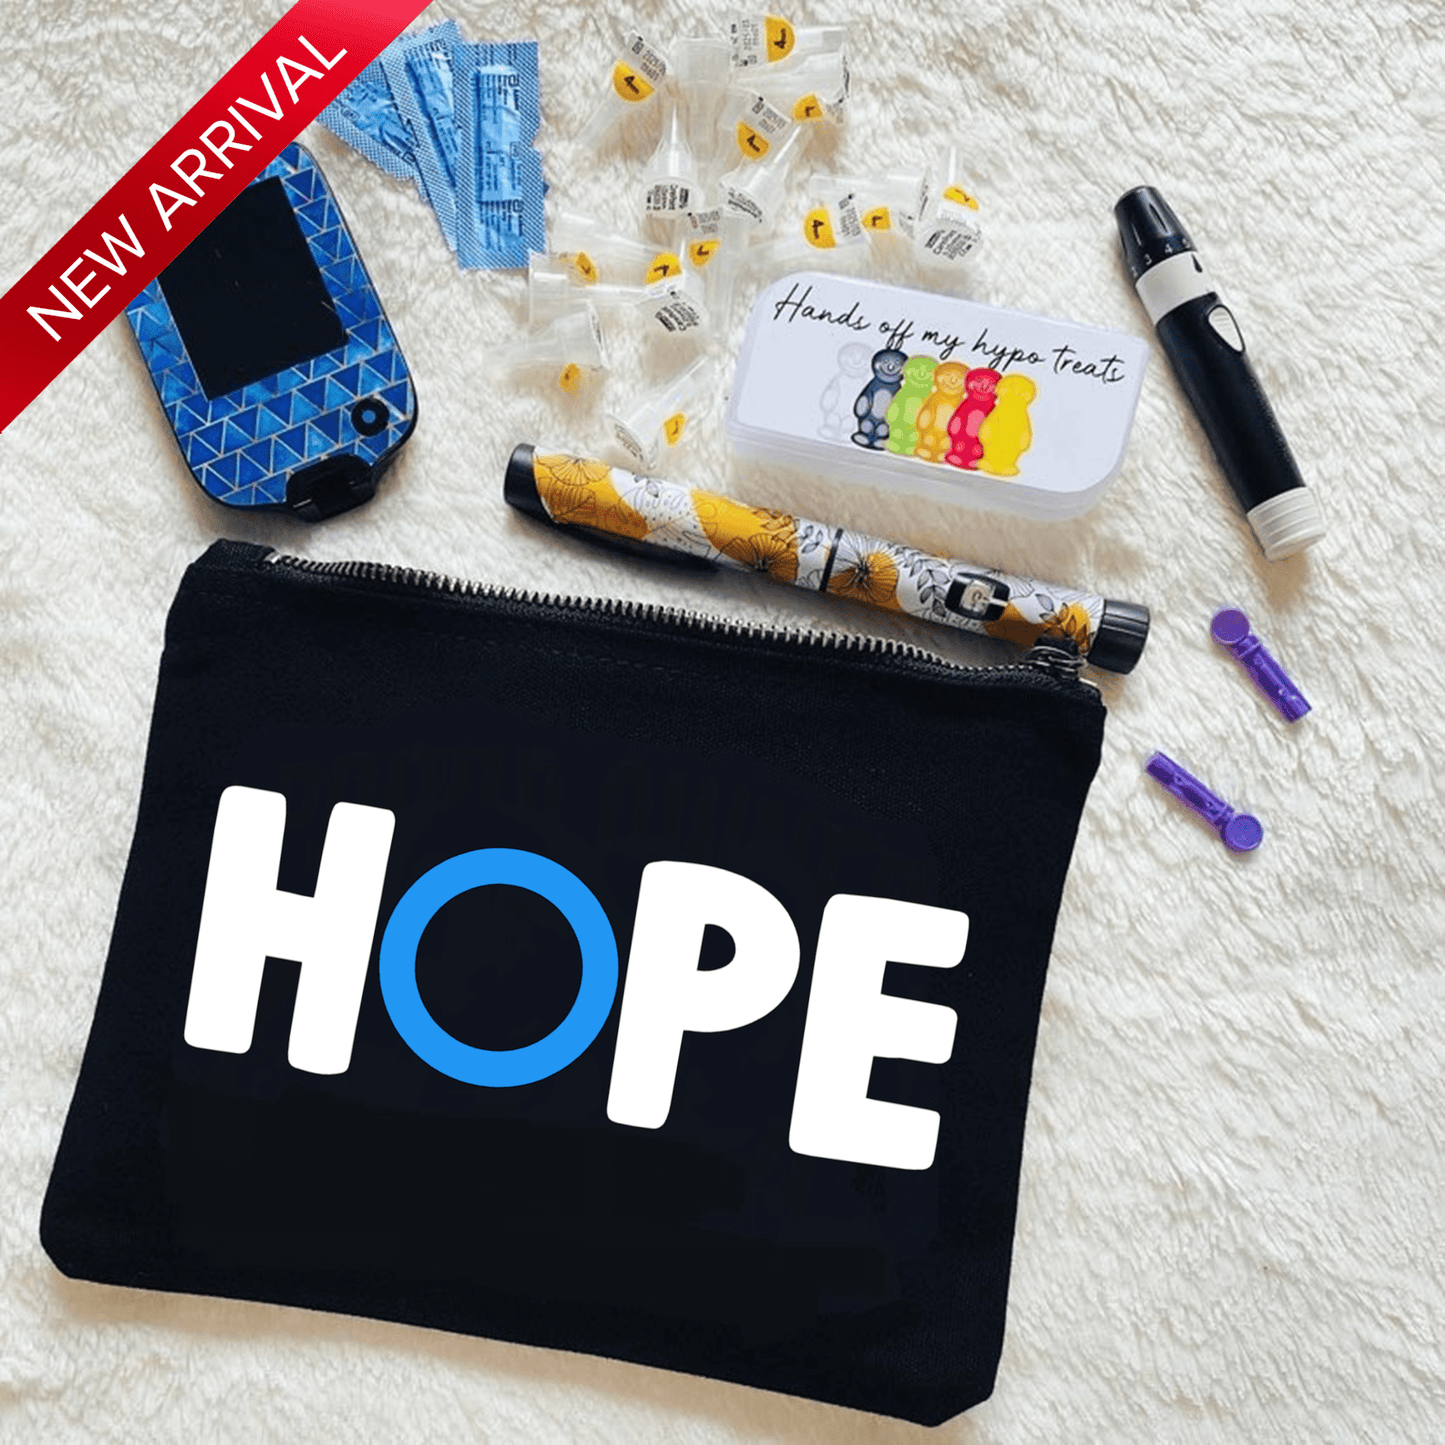 Hope - Kit Bag